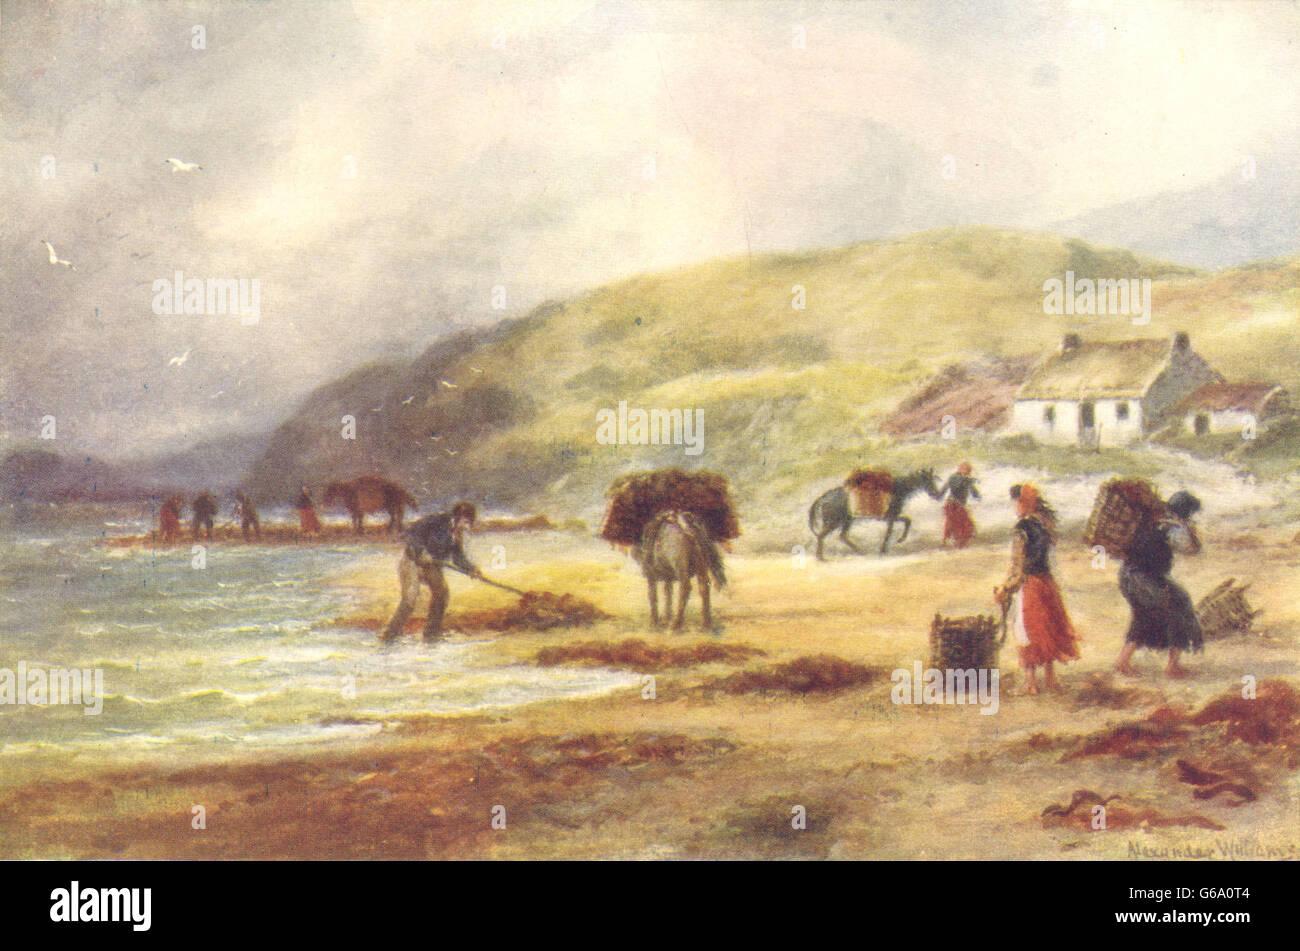 CONNAUGHT: Wrack (seaweed) gathering on the West Coast. Donkeys., print c1912 Stock Photo